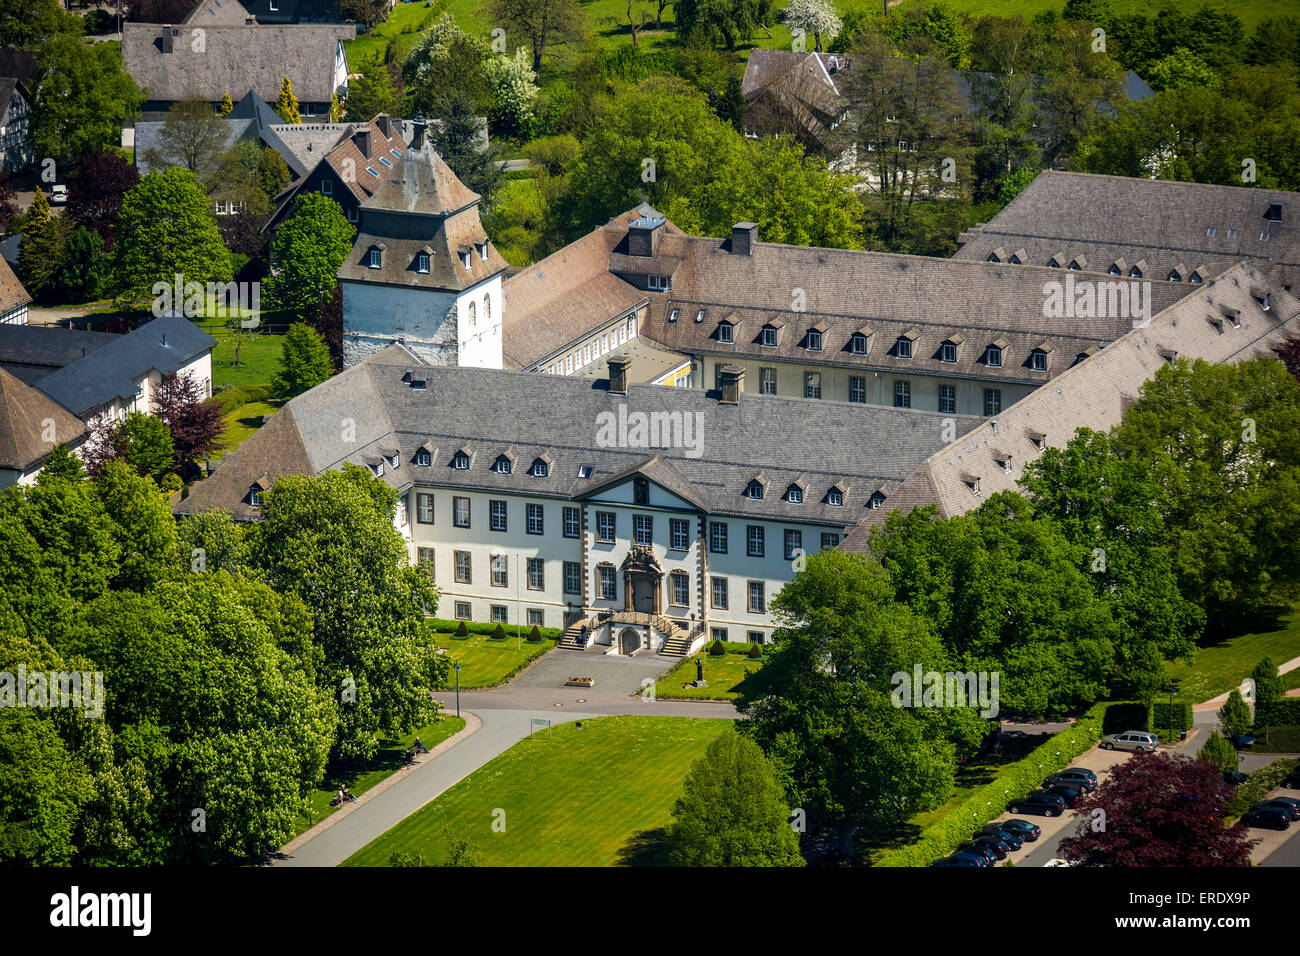 Grafschaft Abbey, Schmallenberg, Sauerland, North Rhine-Westphalia, Germany Stock Photo